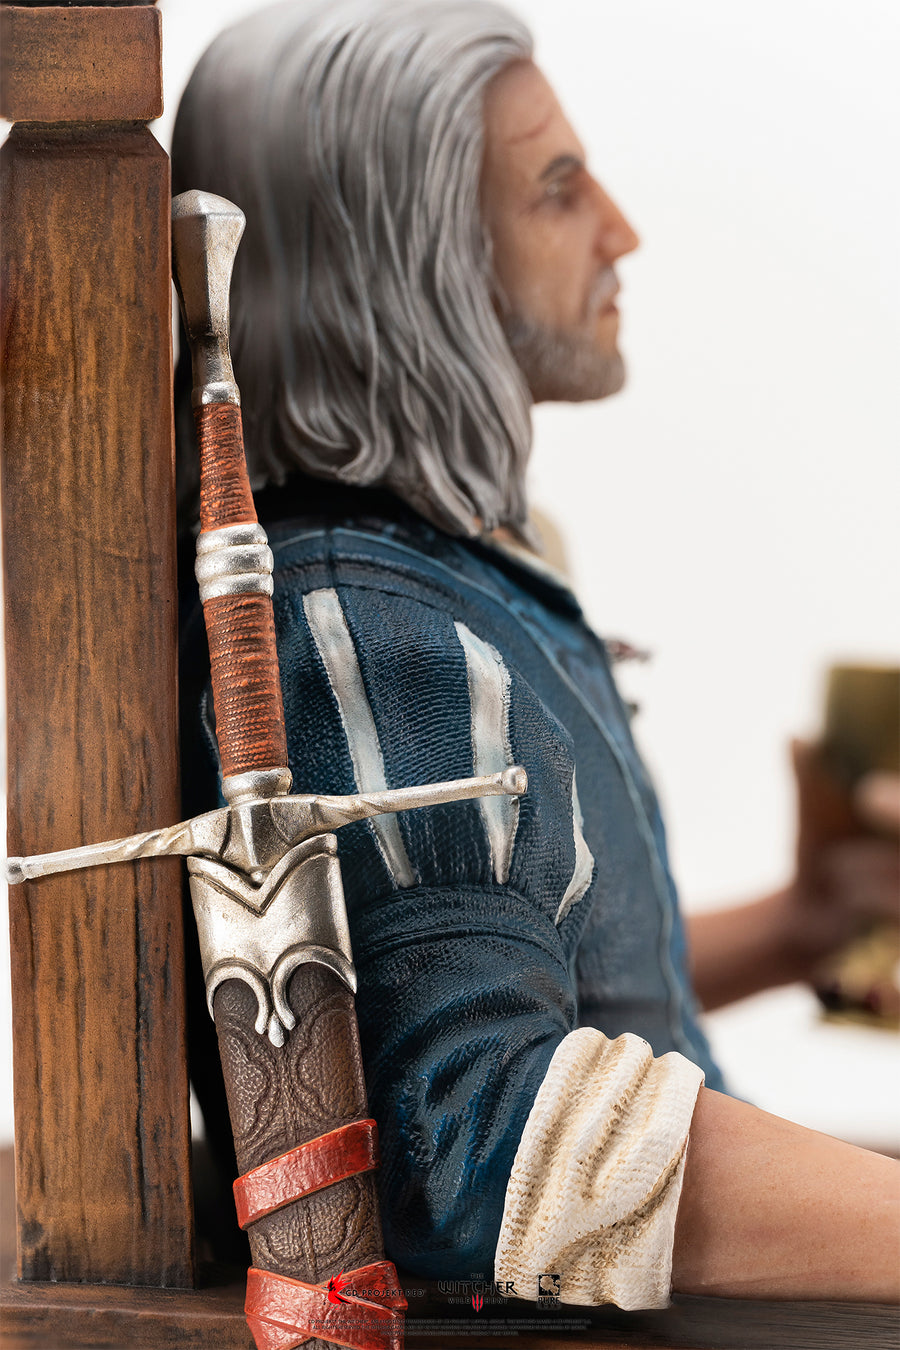 The Witcher 3 : Wild Hunt Geralt Statue à l'échelle 1/6